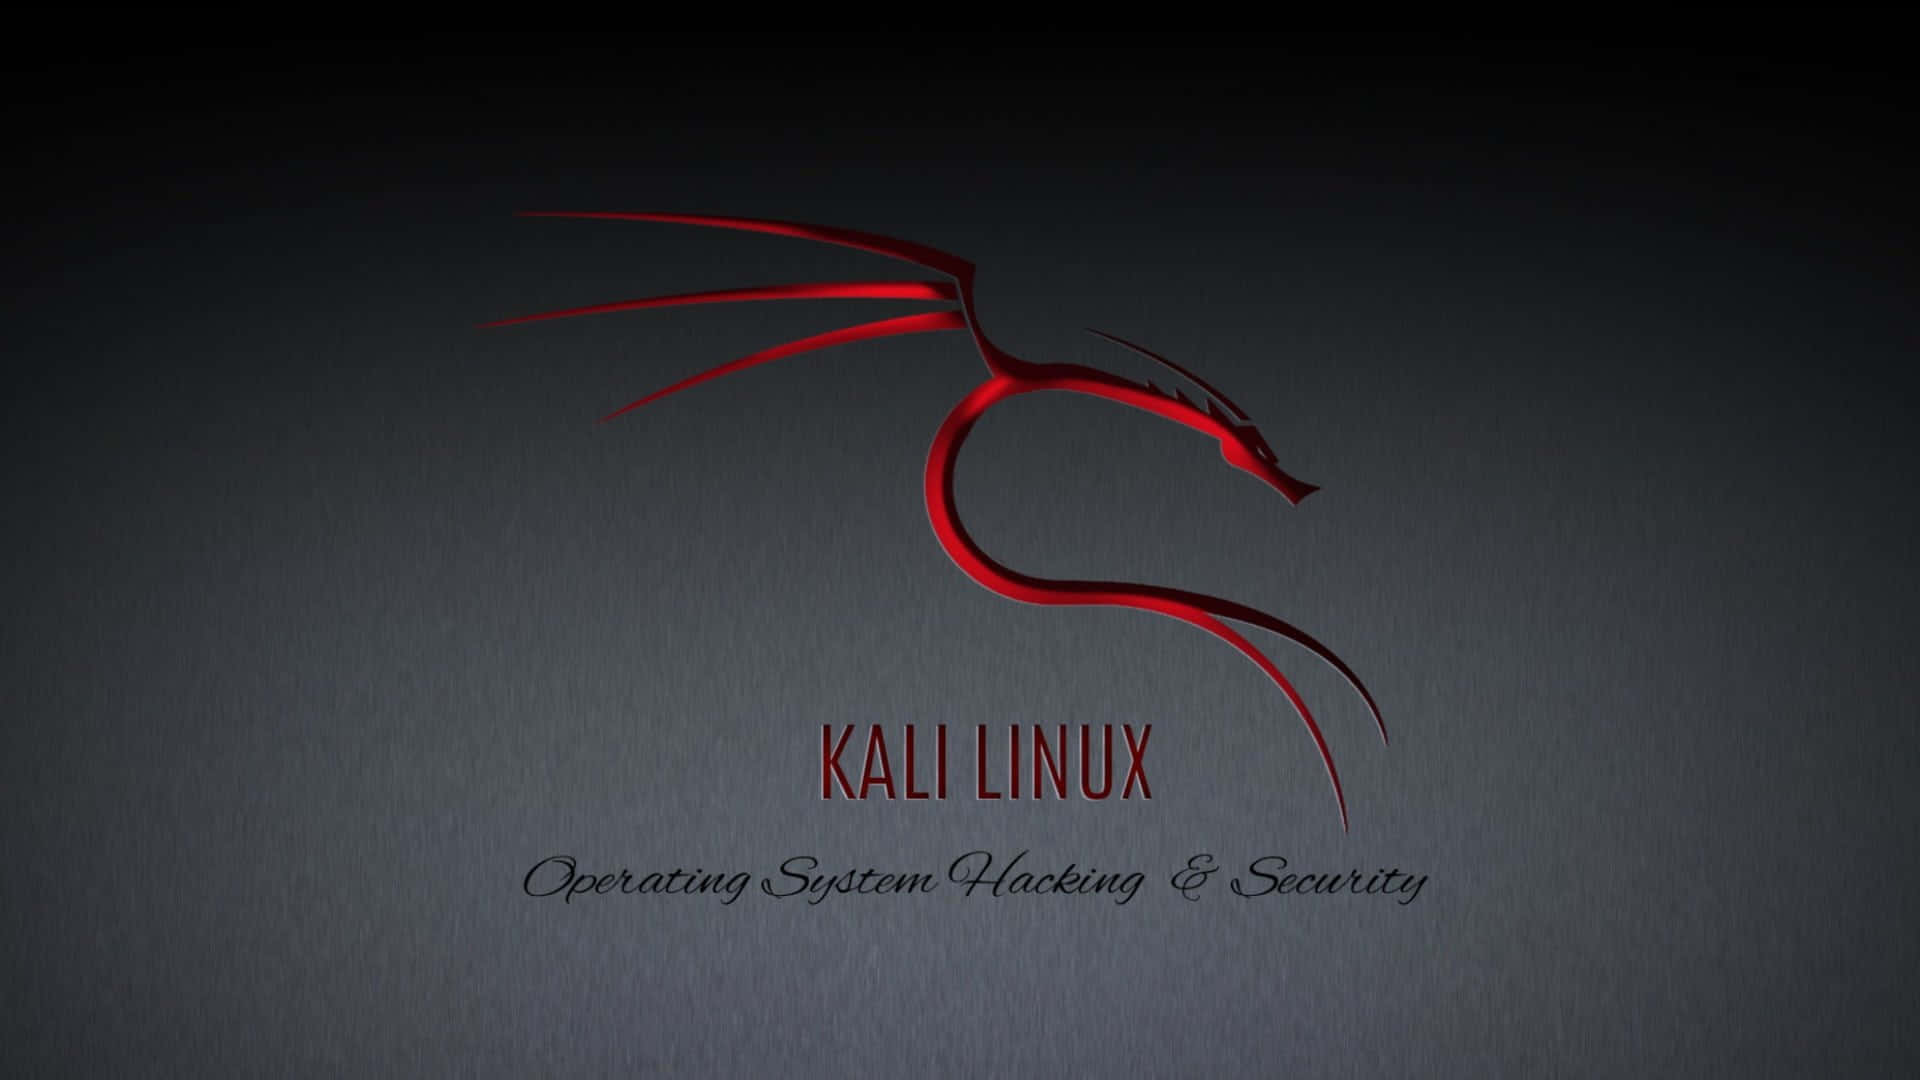 Sichernsie Ihr Netzwerk Mit Kali Linux.